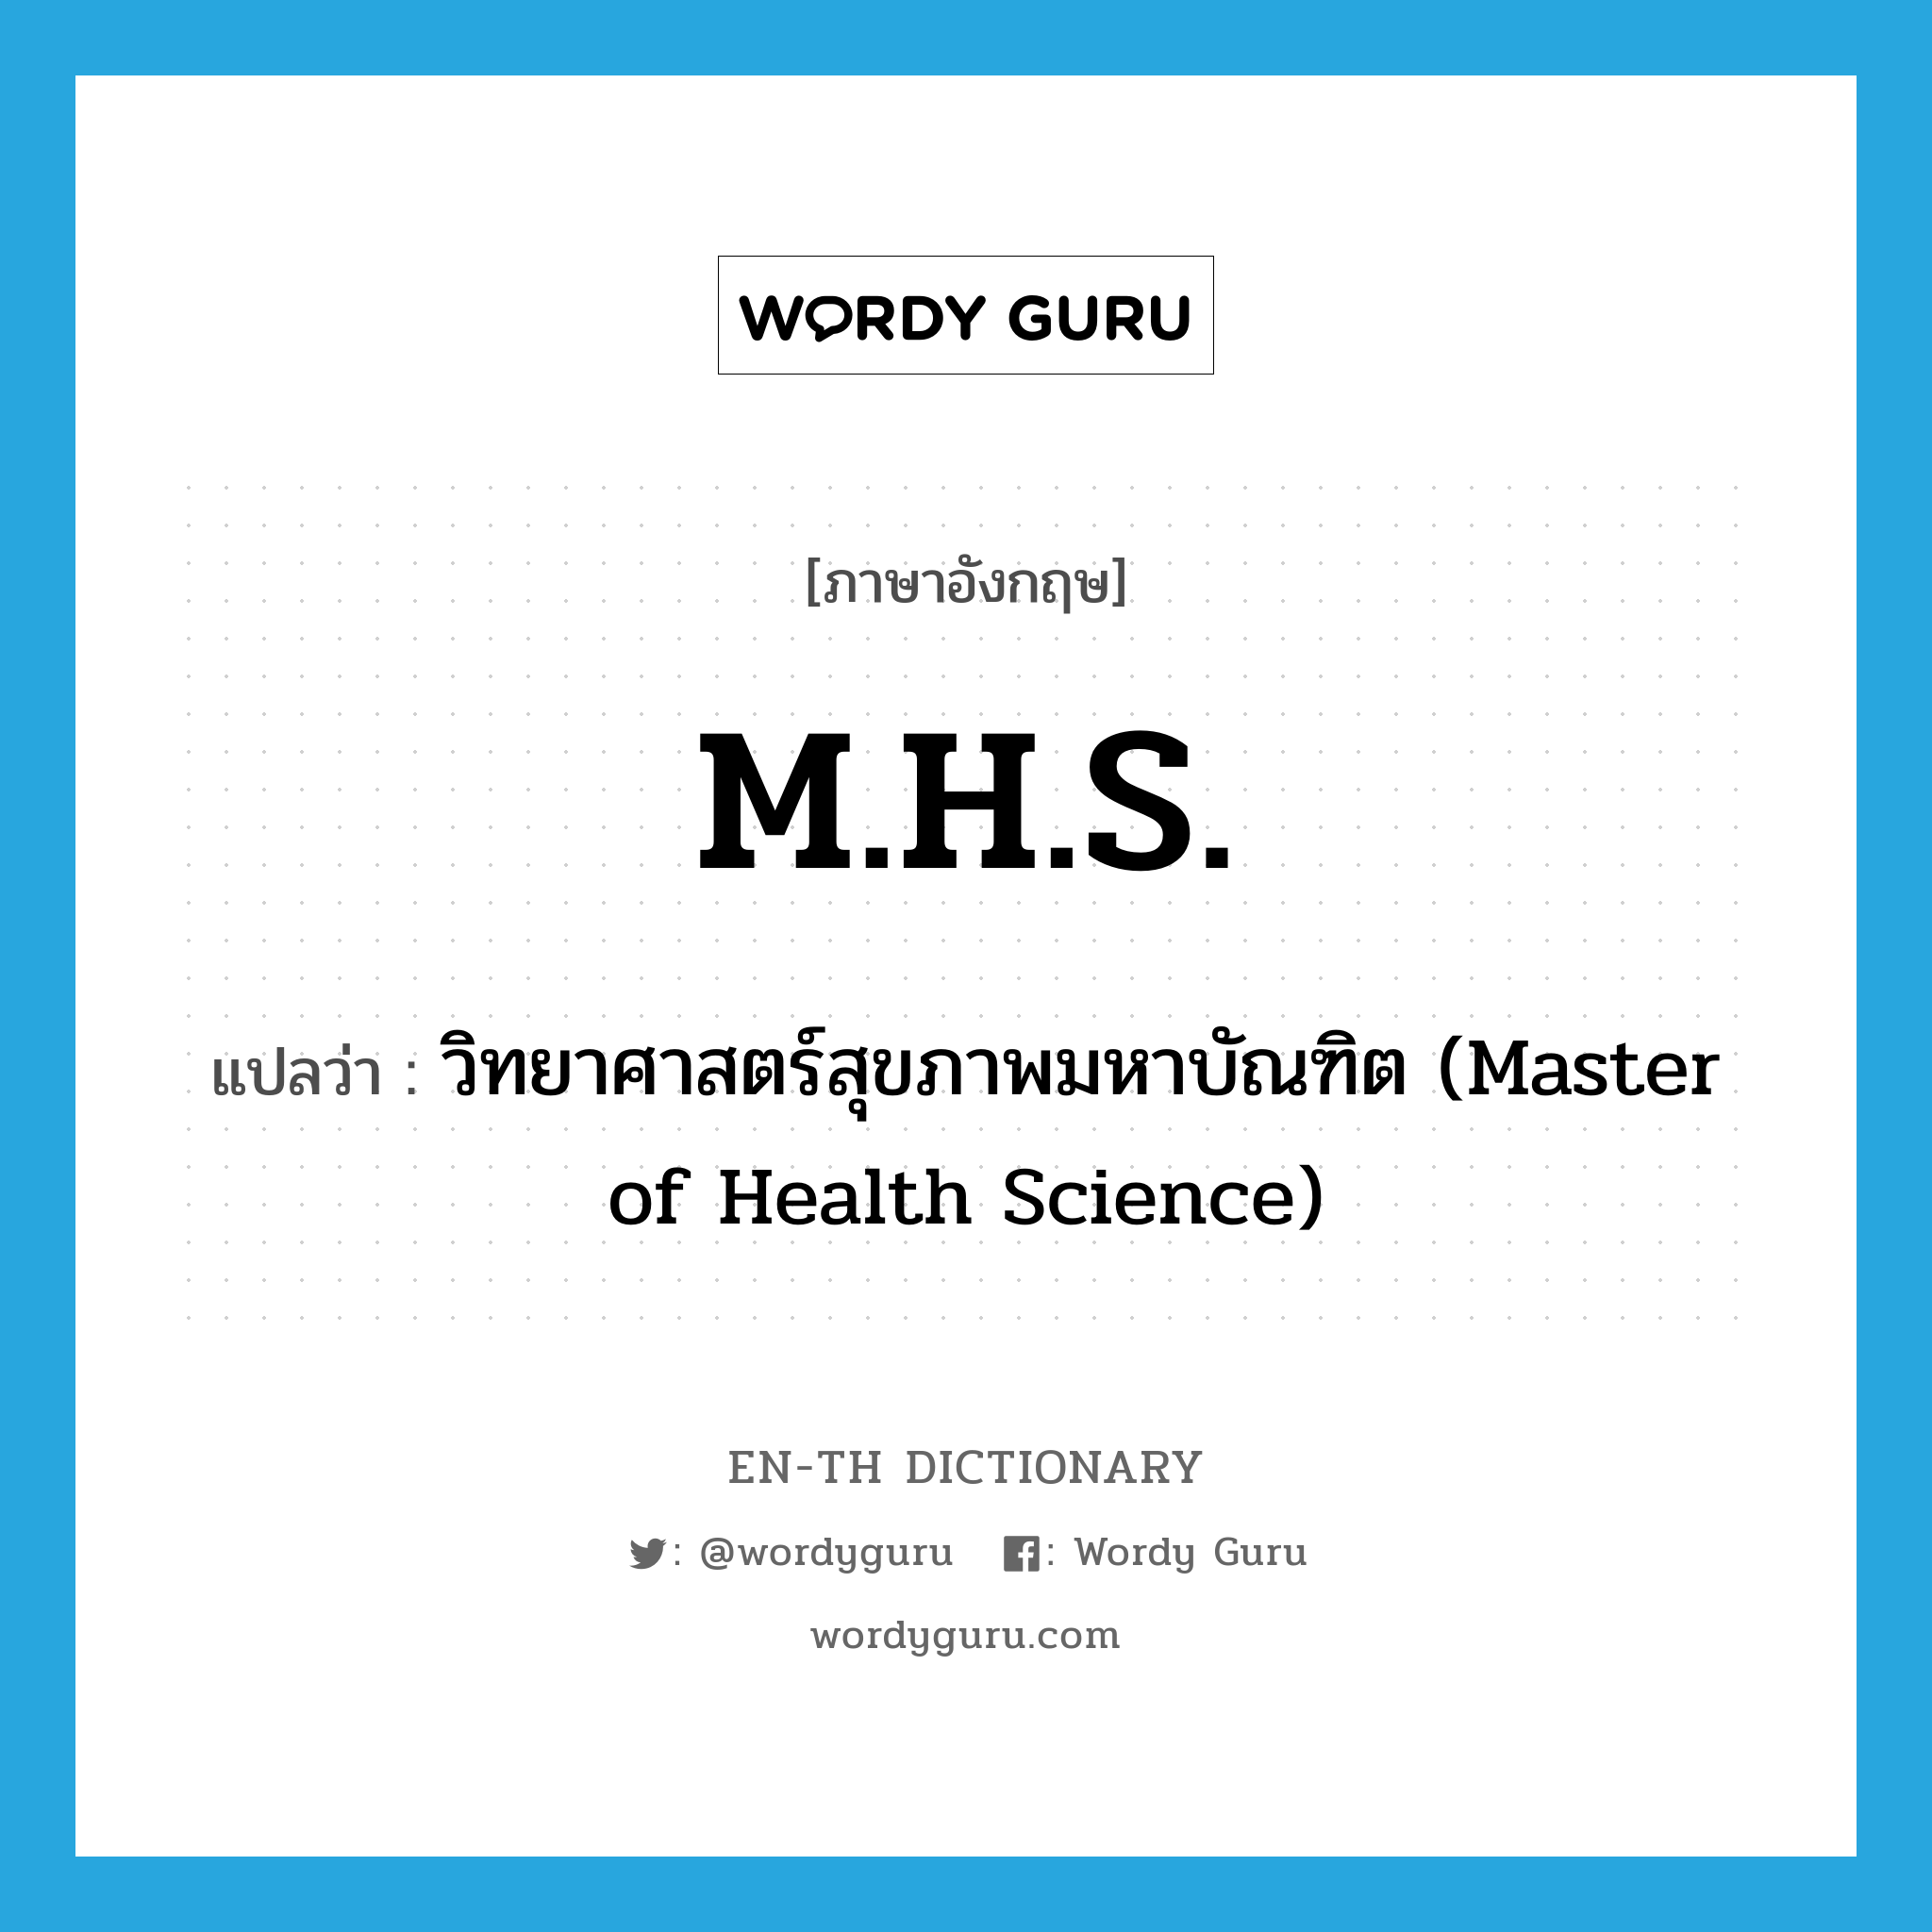 วิทยาศาสตร์สุขภาพมหาบัณฑิต (Master of Health Science) ภาษาอังกฤษ?, คำศัพท์ภาษาอังกฤษ วิทยาศาสตร์สุขภาพมหาบัณฑิต (Master of Health Science) แปลว่า M.H.S. ประเภท ABBR หมวด ABBR